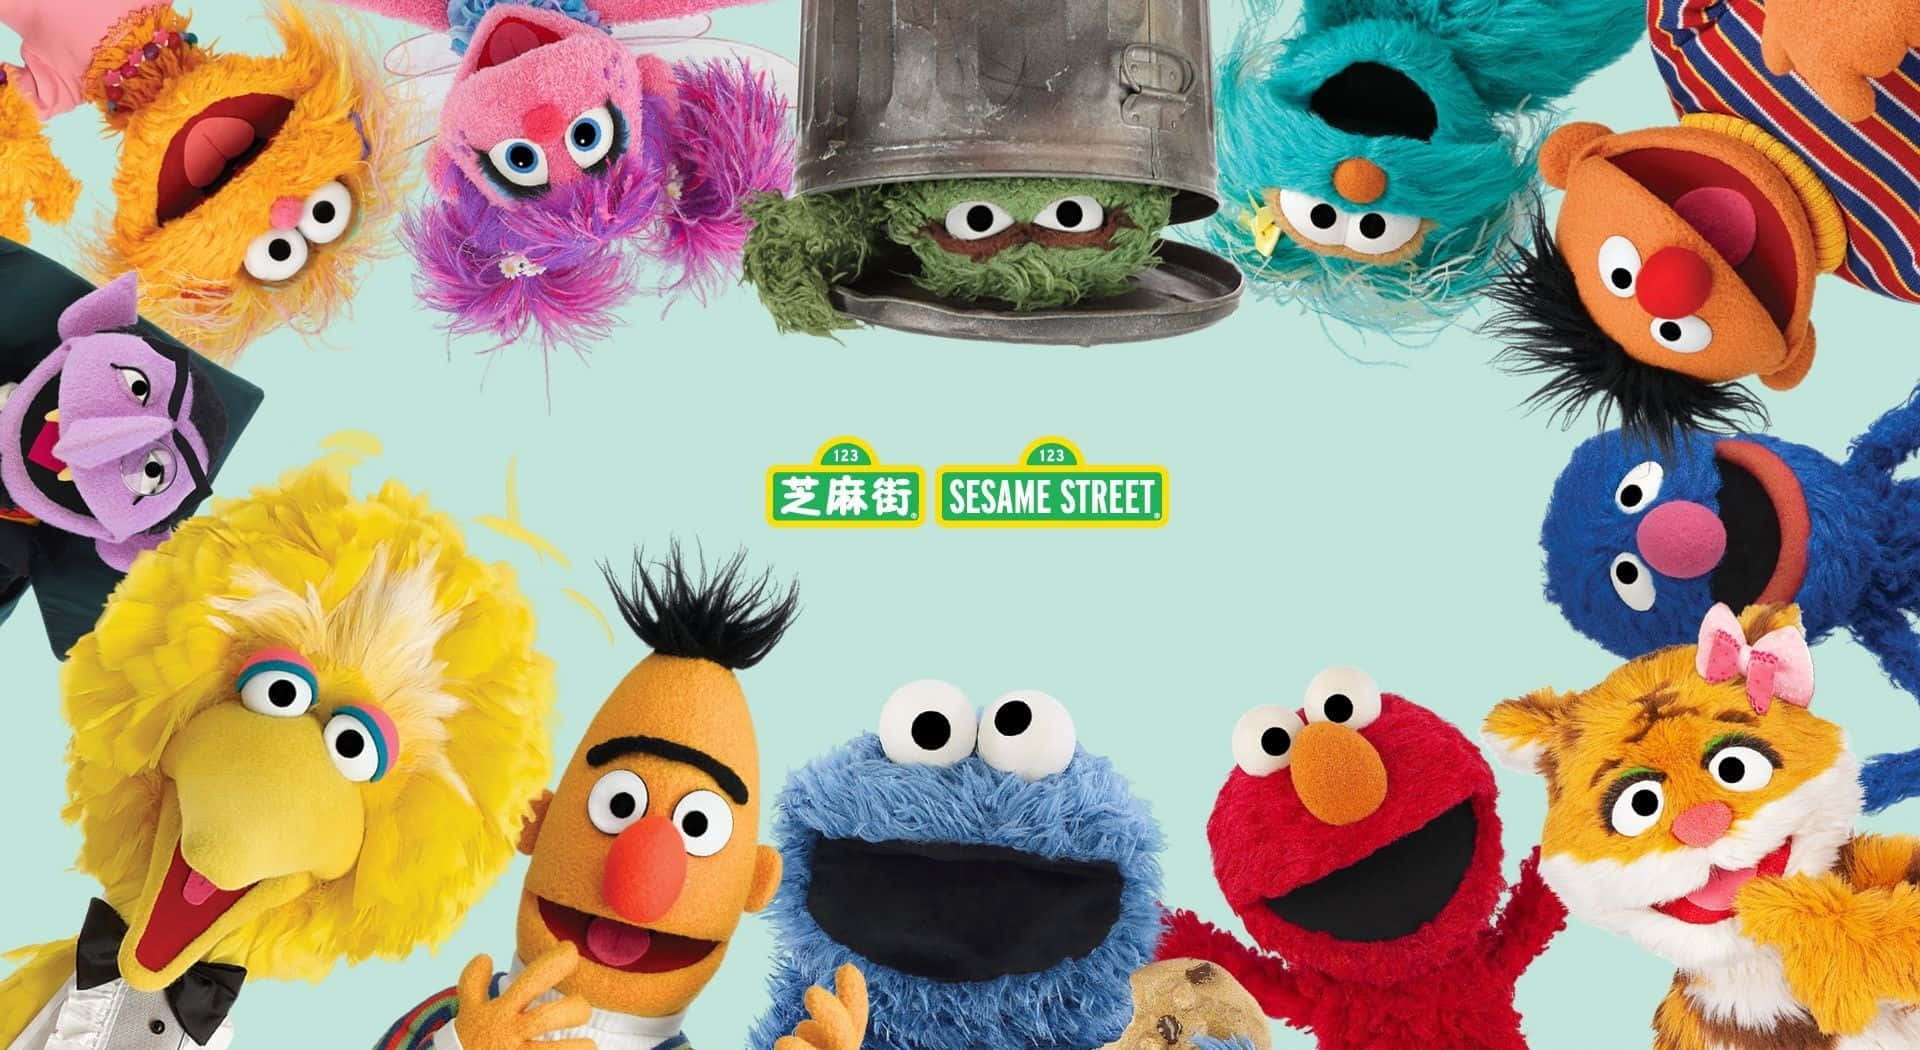 Join the Gang on Sesame Street!